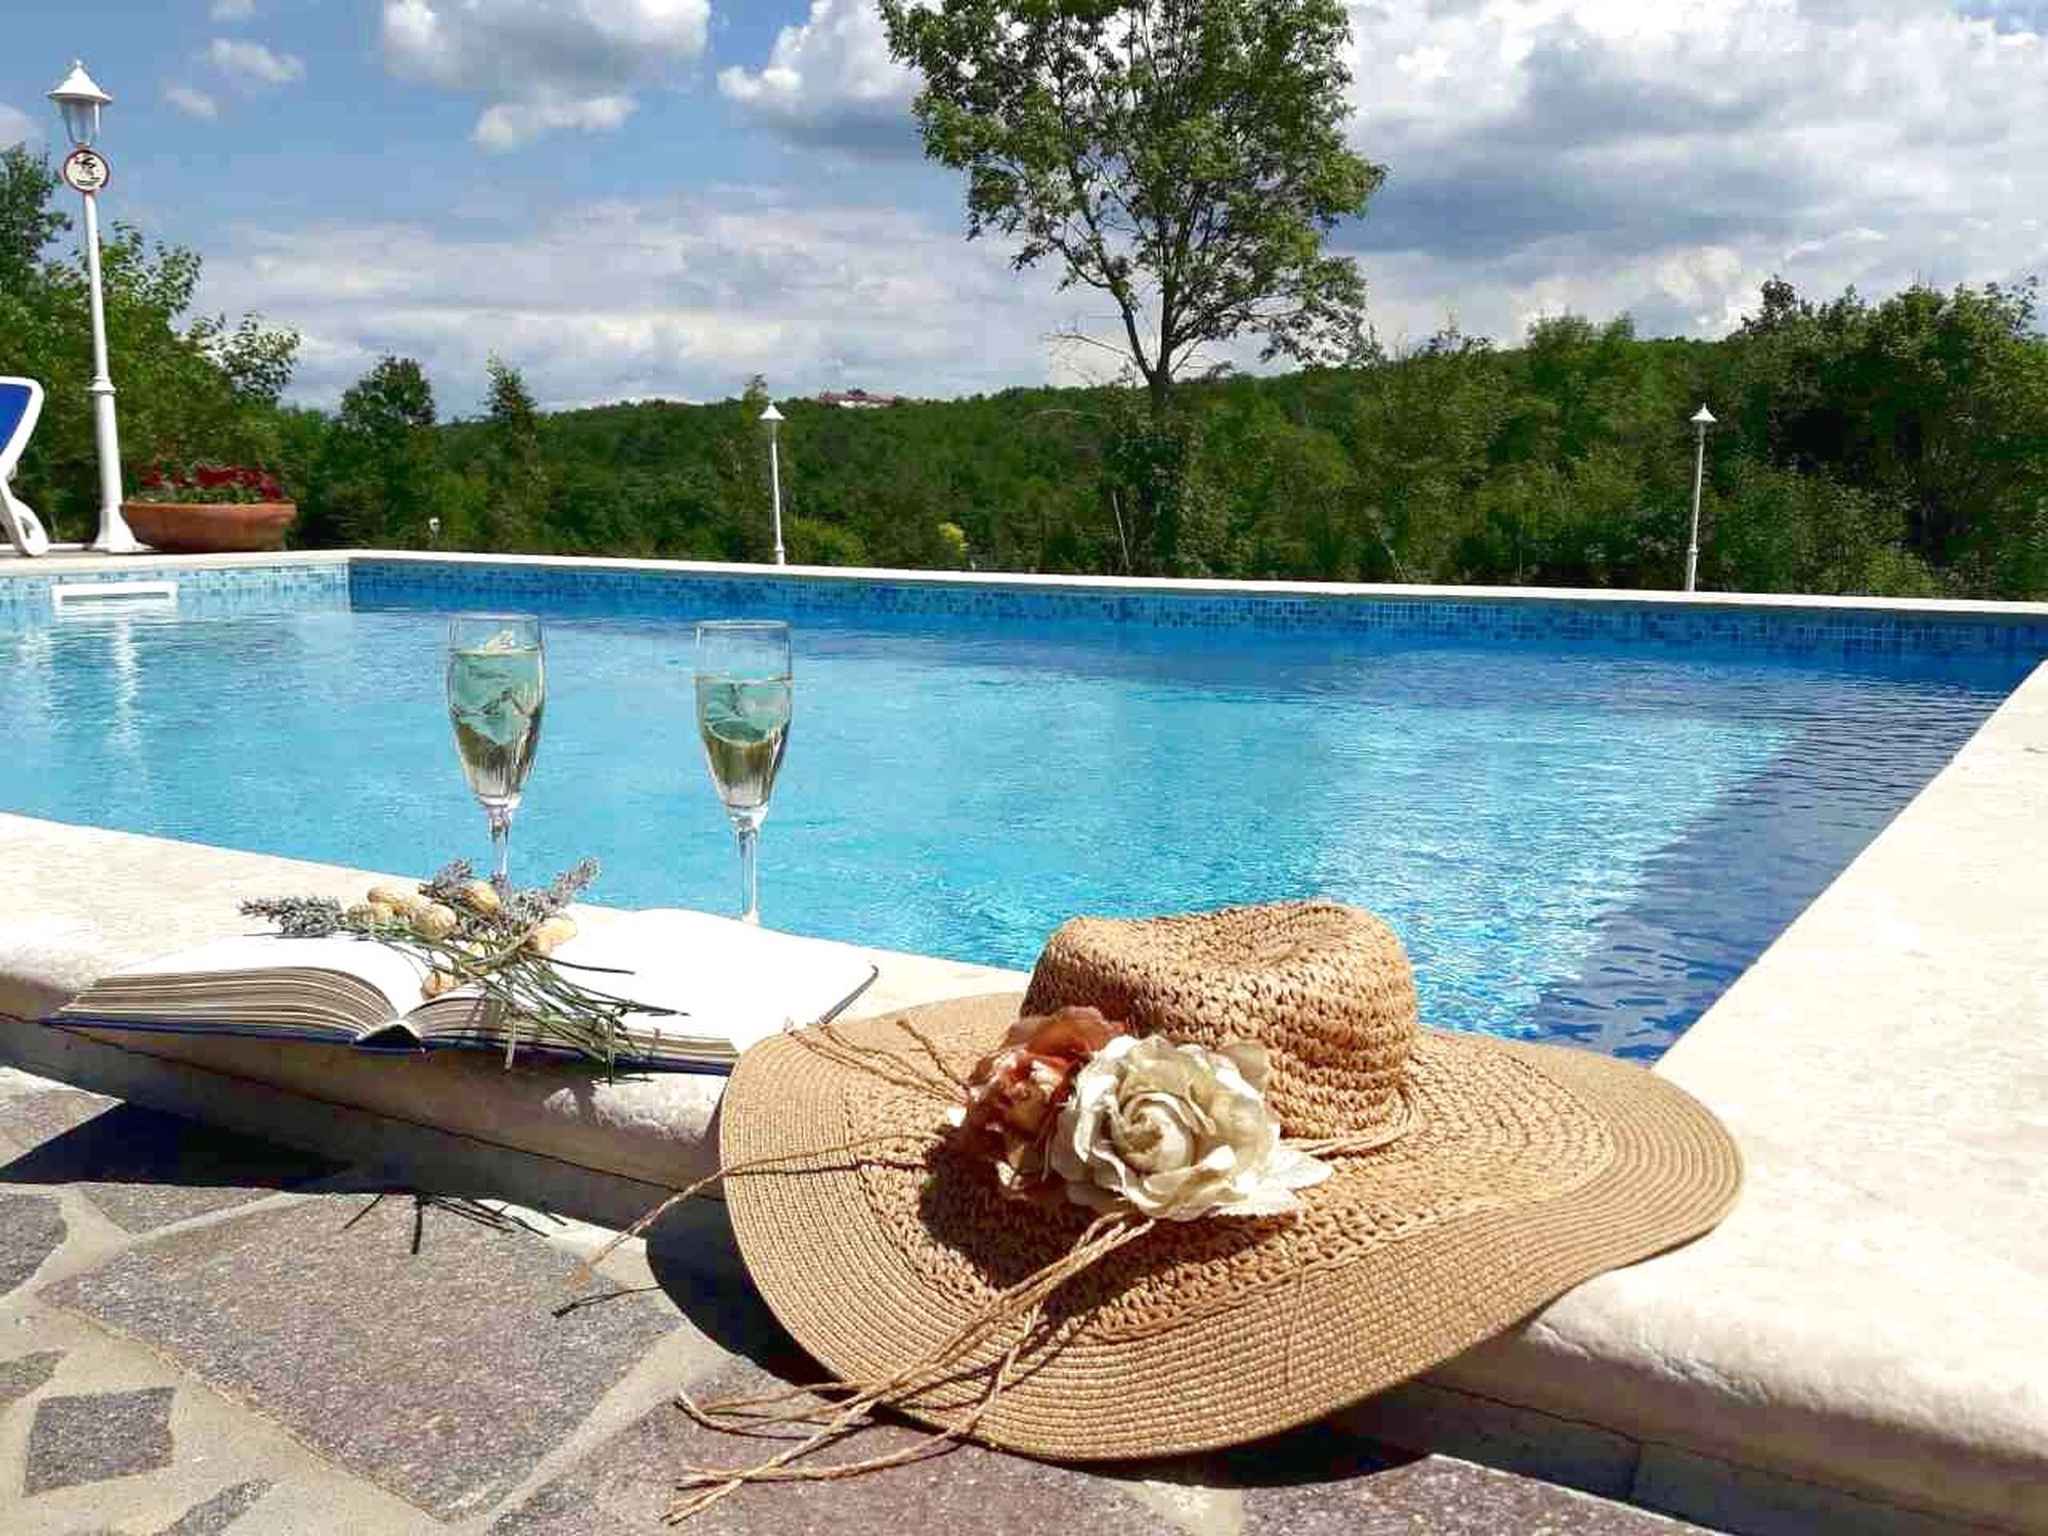 Villa mit Pool in ruhiger Lage Ferienhaus in Istrien